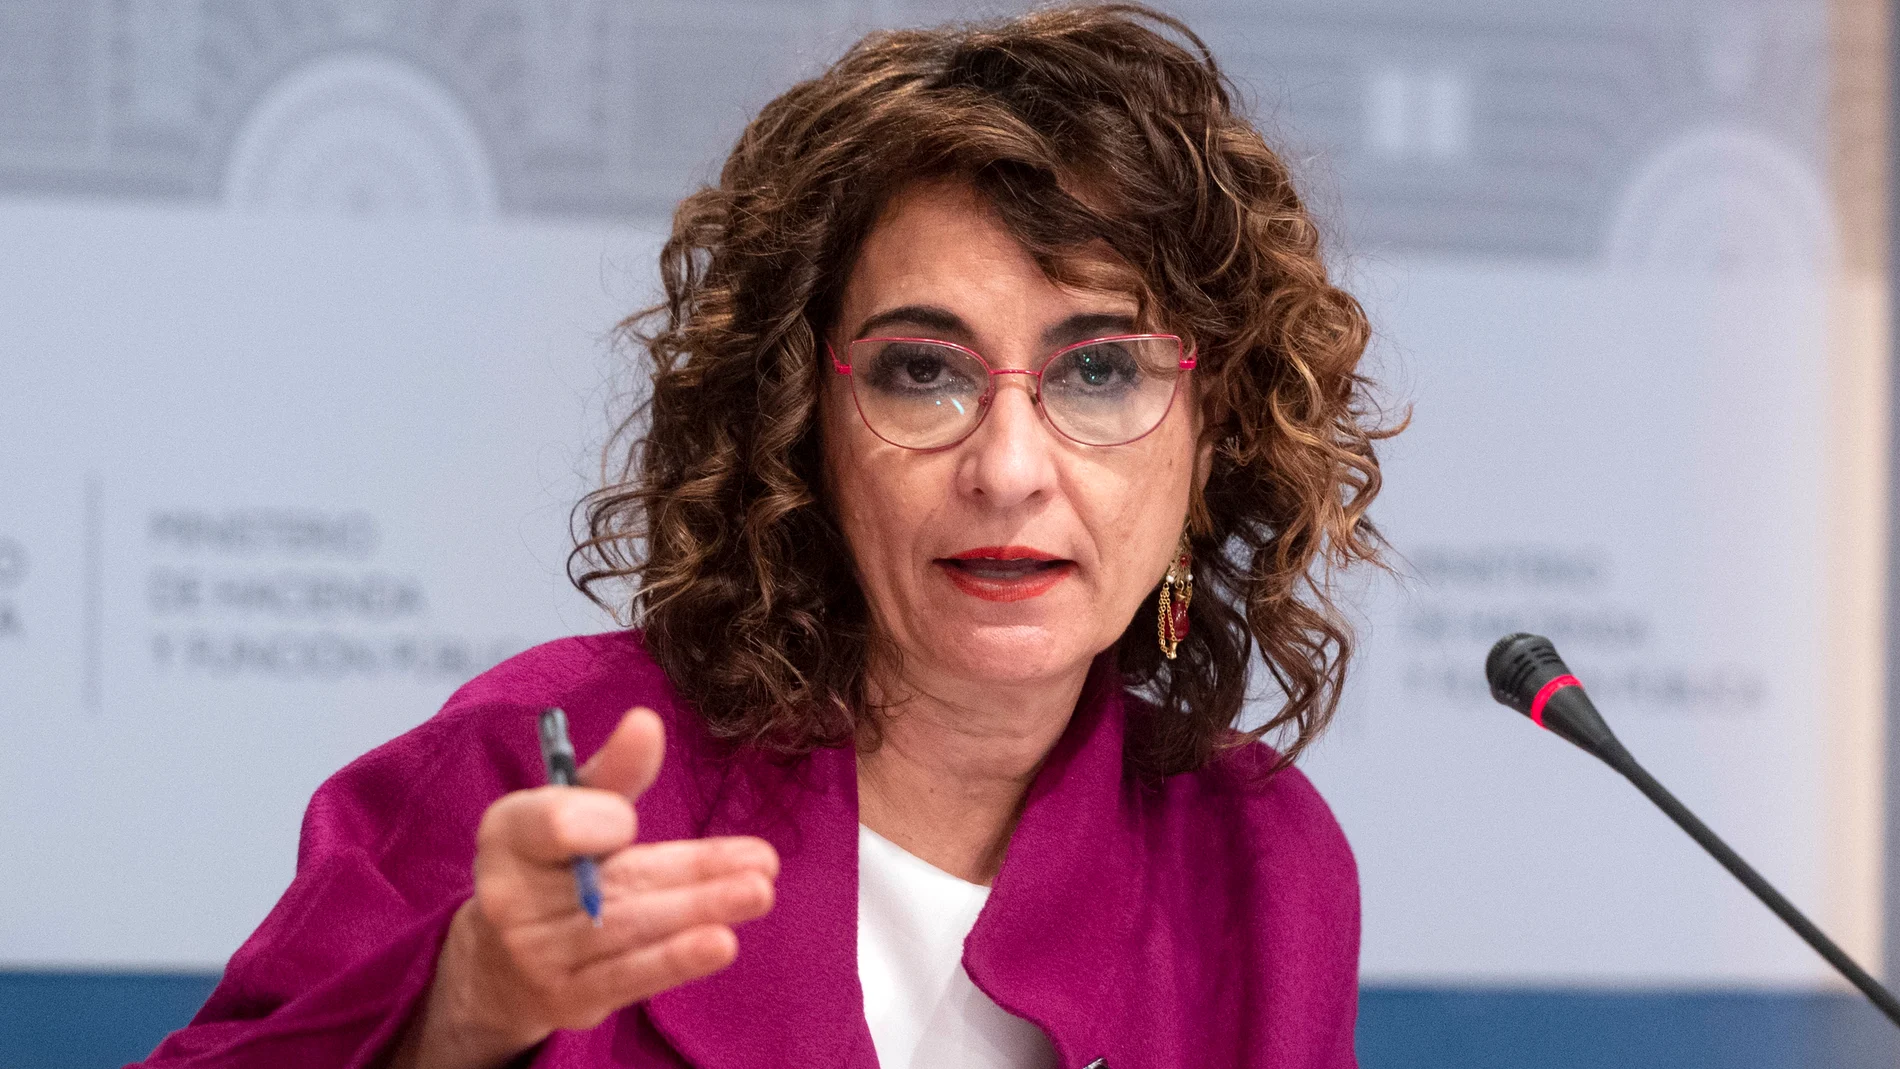 La ministra de Hacienda y Función Pública, María Jesús Montero, presenta un avance de los datos de cierre de recaudación tributaria correspondientes a 2021, en la Sede del Ministerio, a 27 de enero de 2022, en Madrid